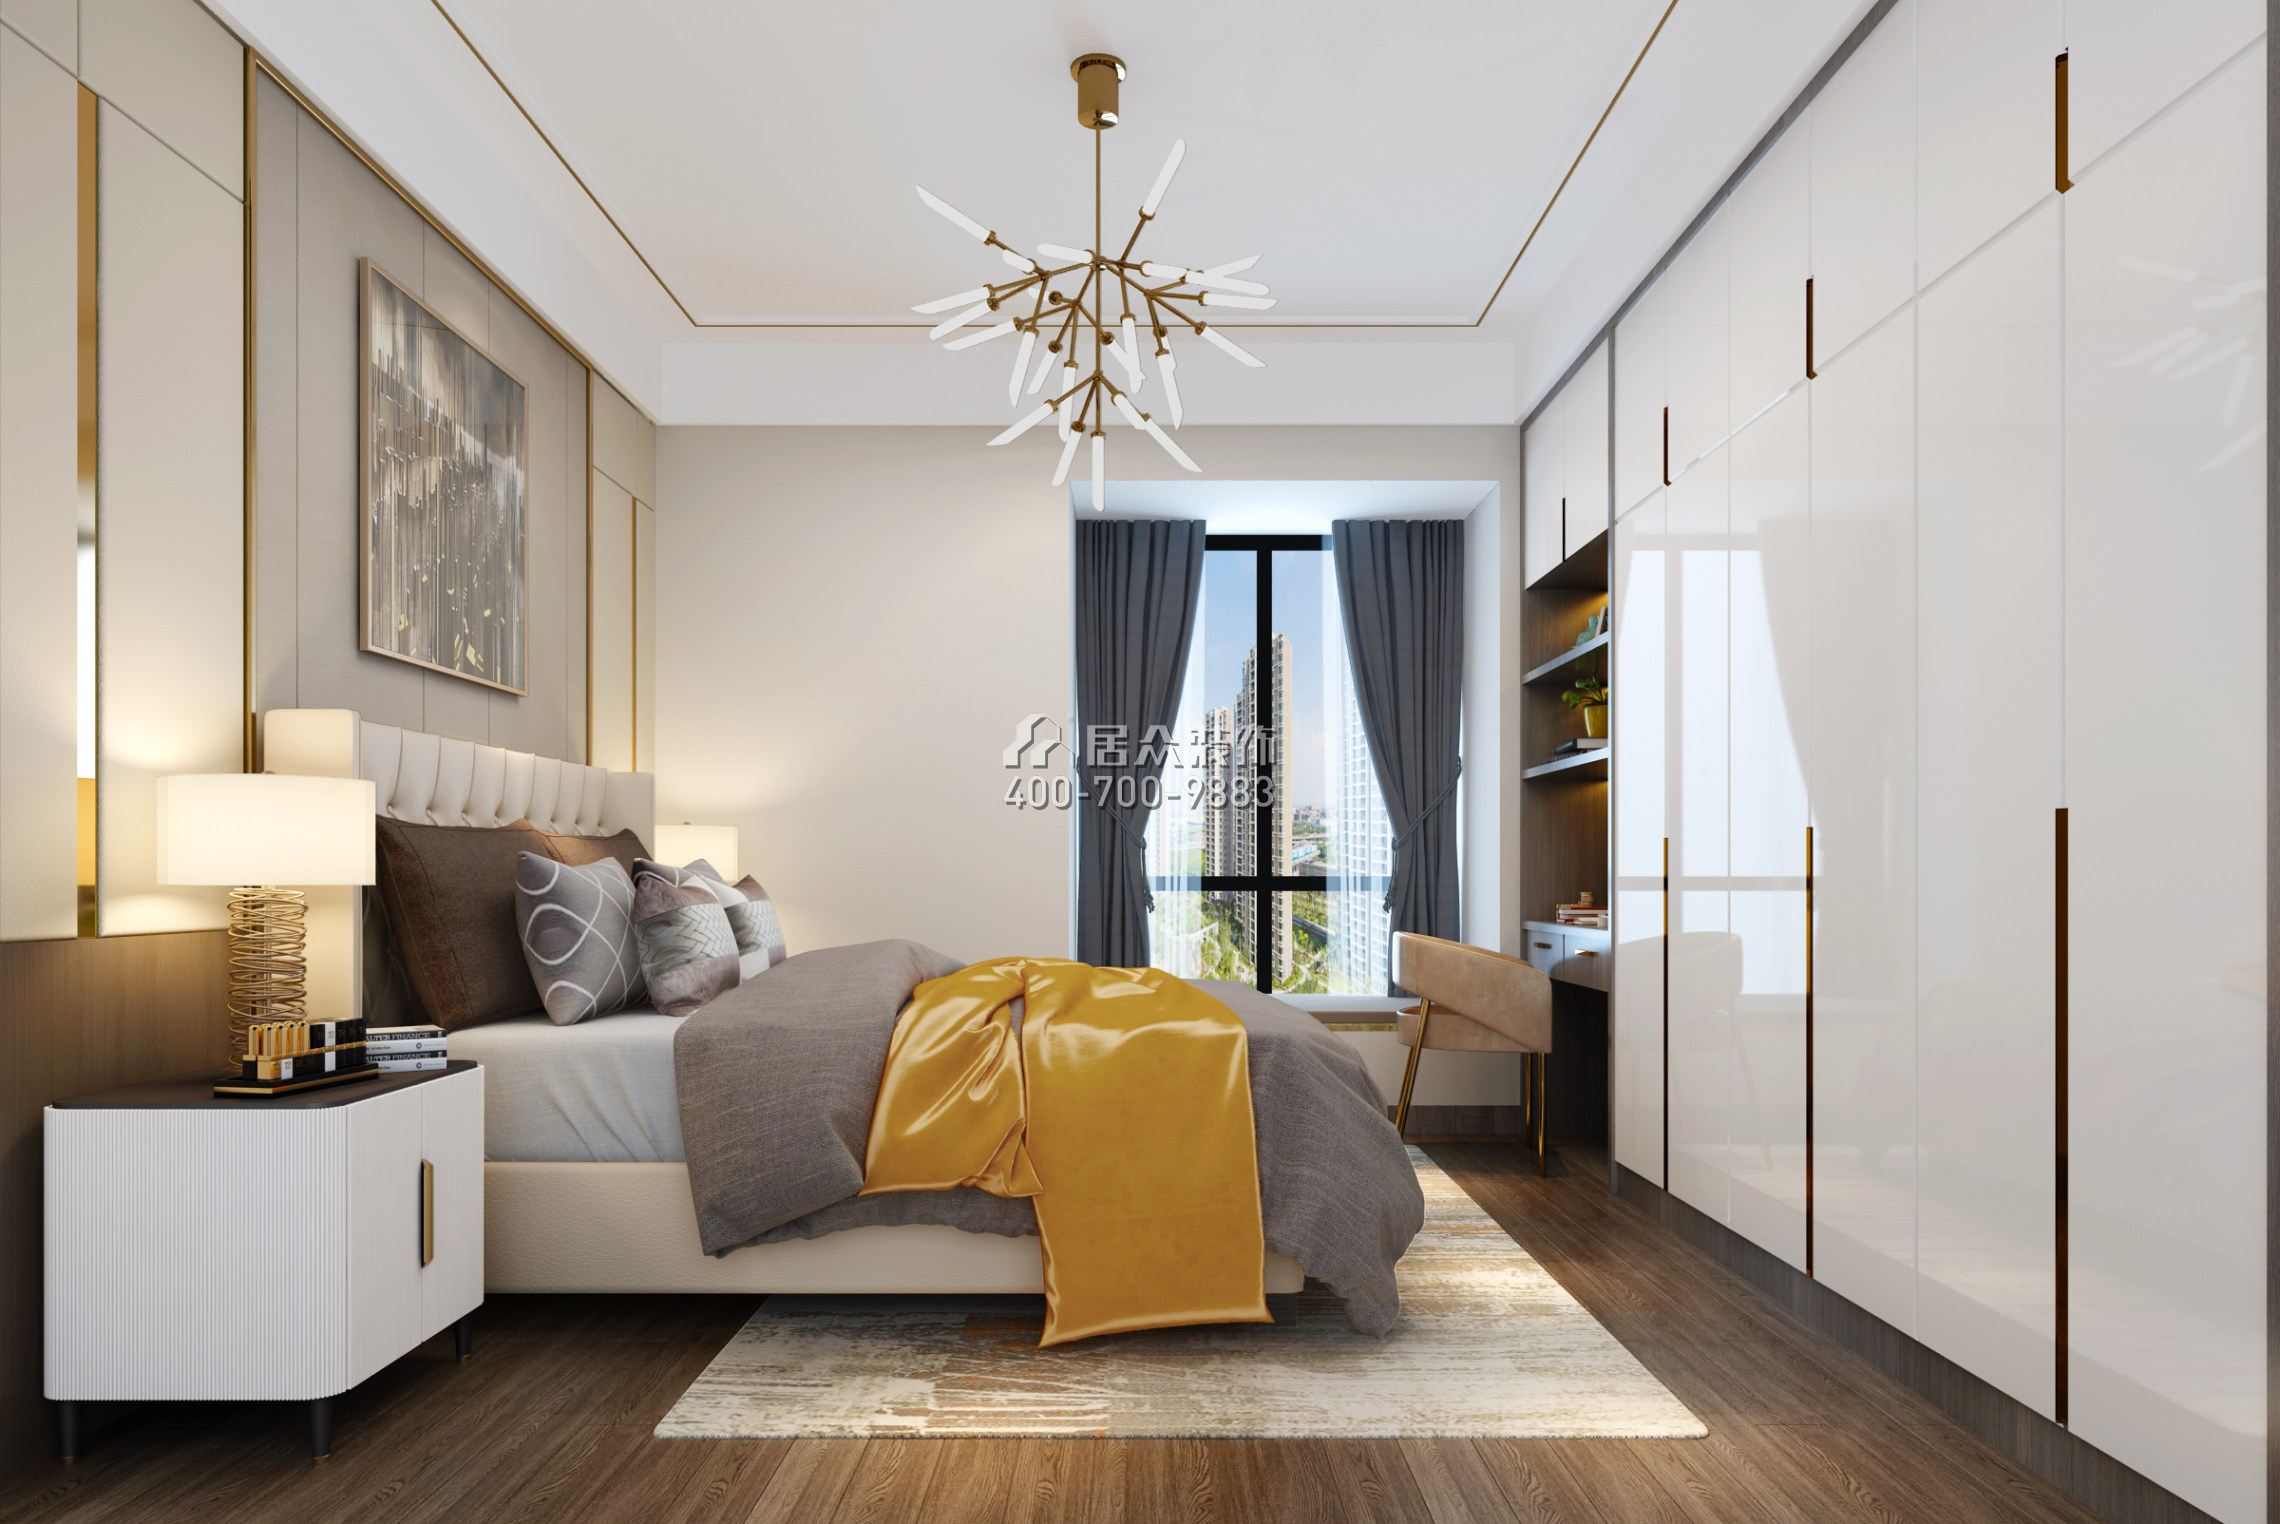 松崗紅星國際二期110平方米現代簡約風格平層戶型臥室裝修效果圖